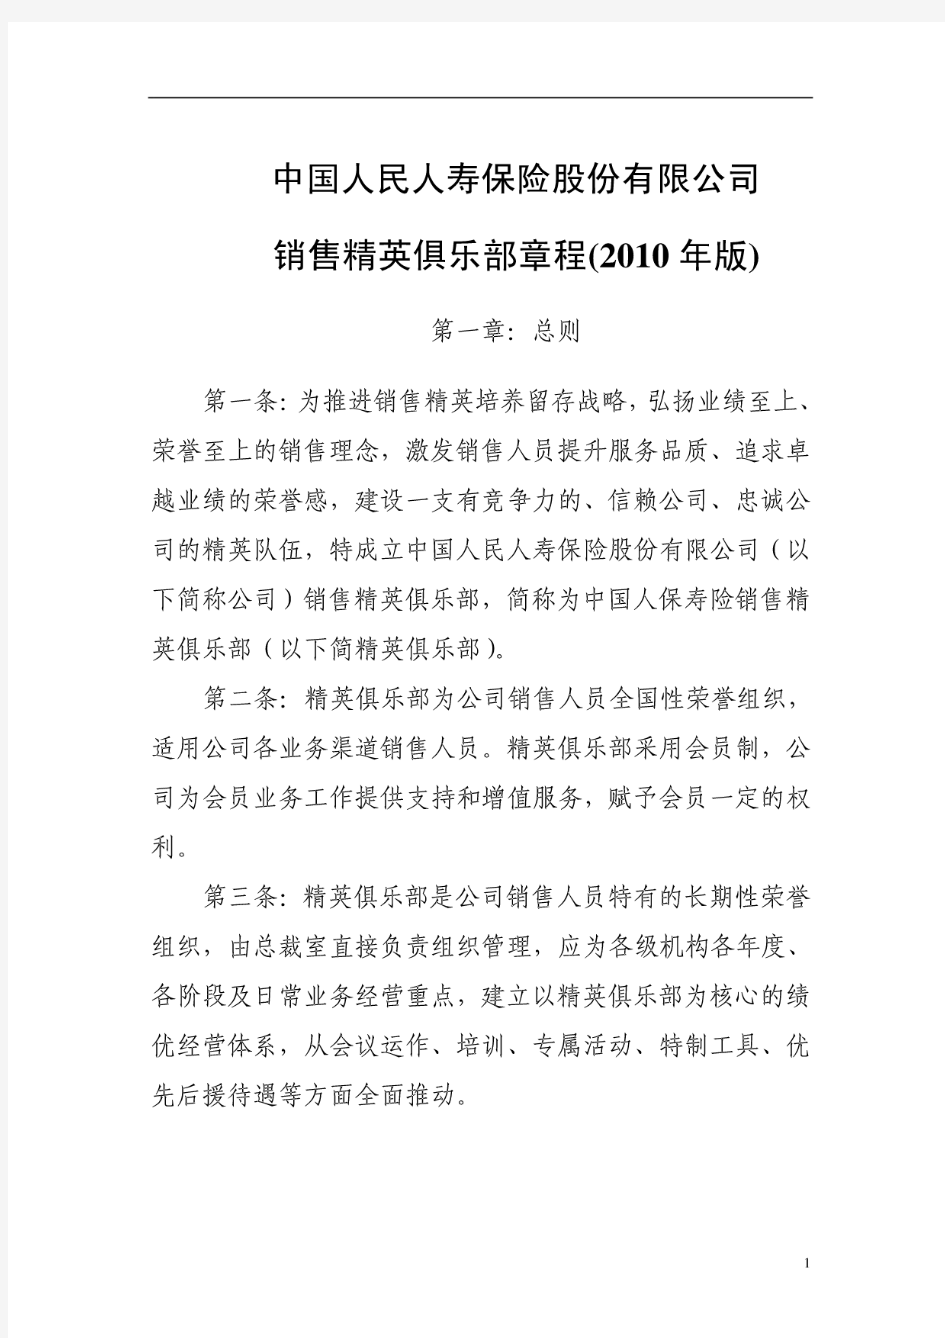 中国人民人寿保险股份有限公司销售精英俱乐部章程(2010年版)